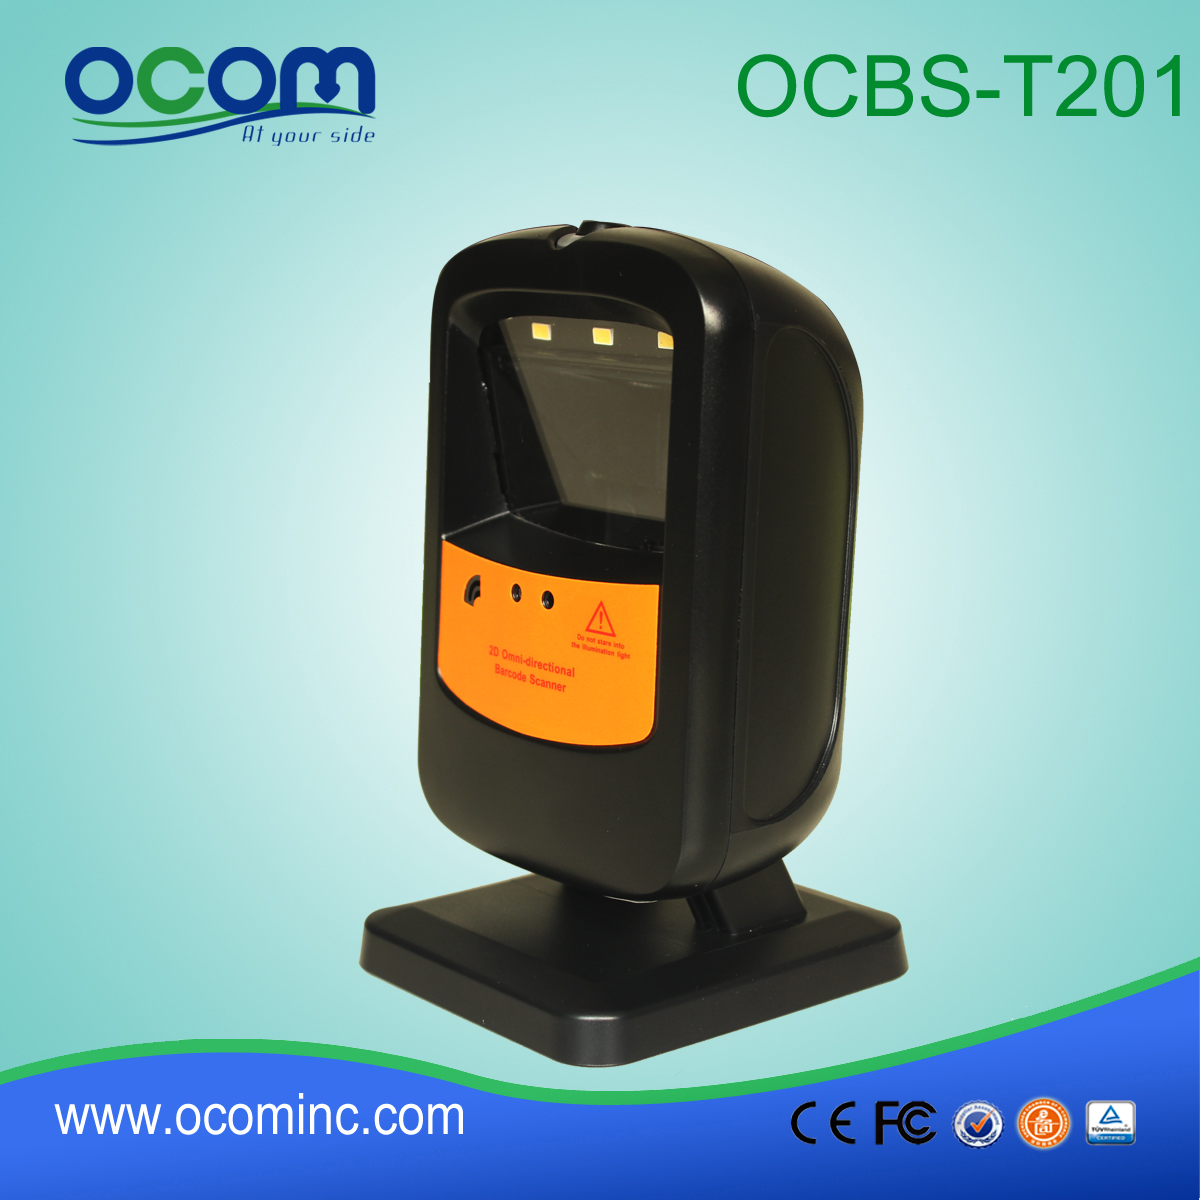 OCBS-T201 Kiosk Barcode Data Terminal Laser Reader Scanner